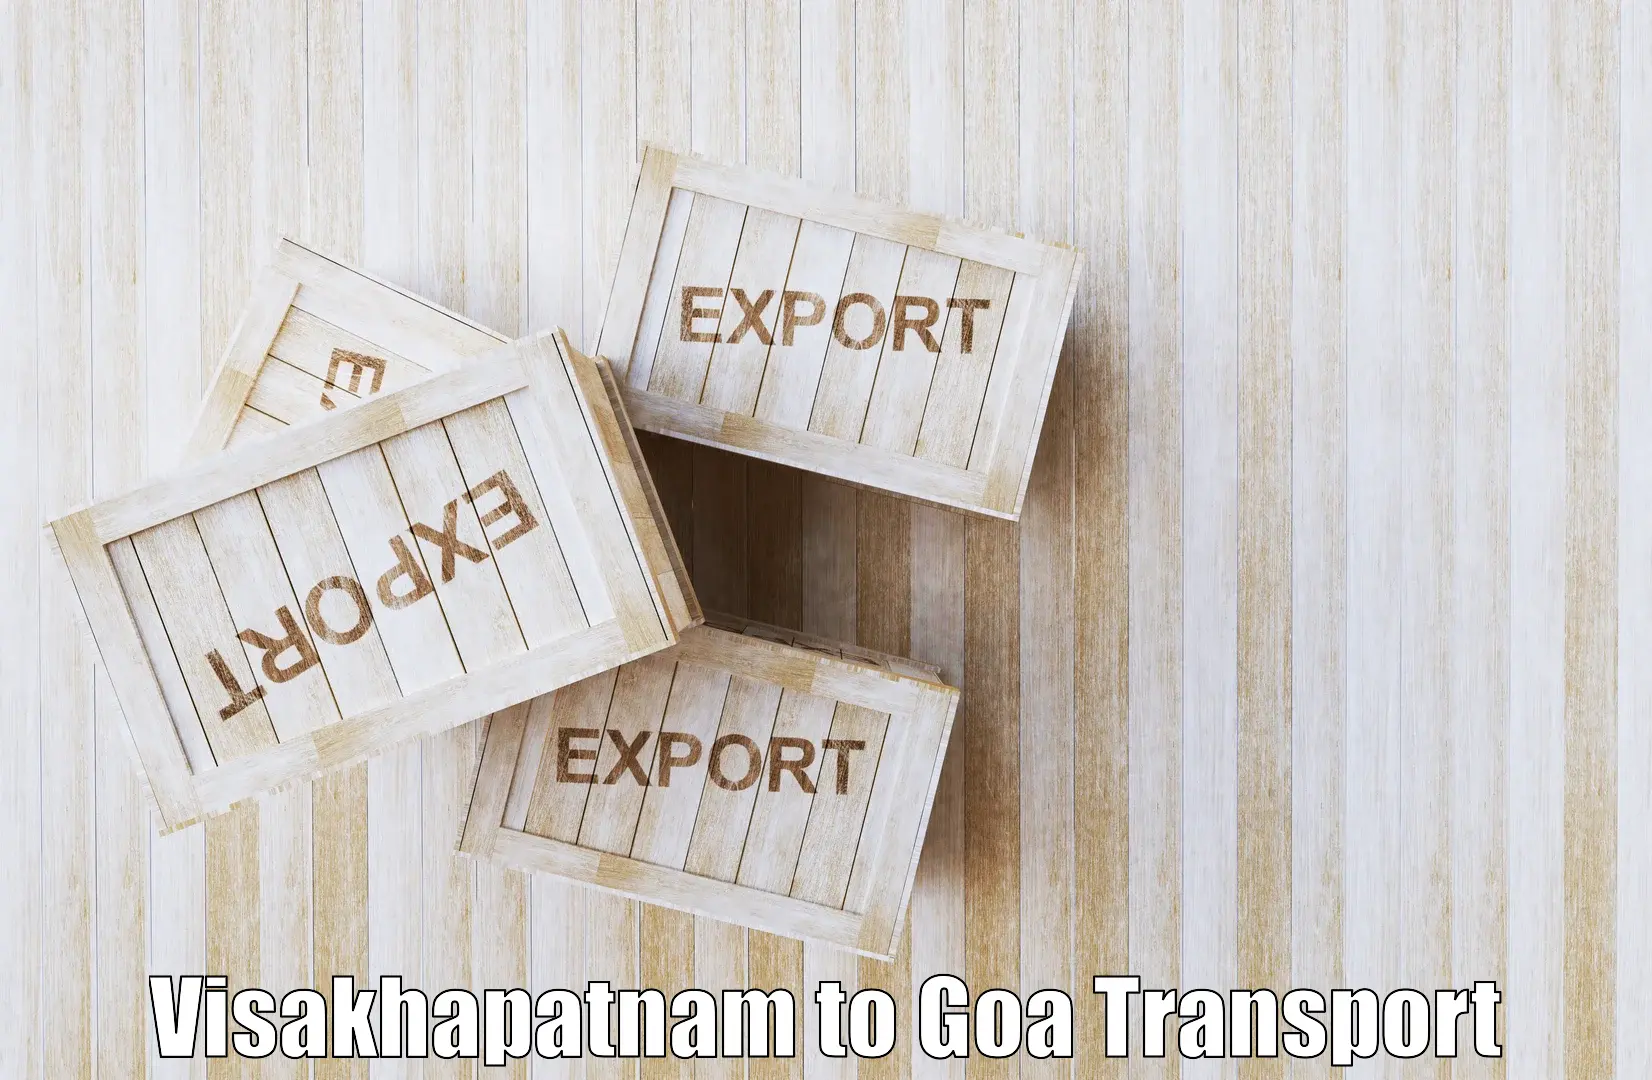 Best transport services in India Visakhapatnam to Vasco da Gama